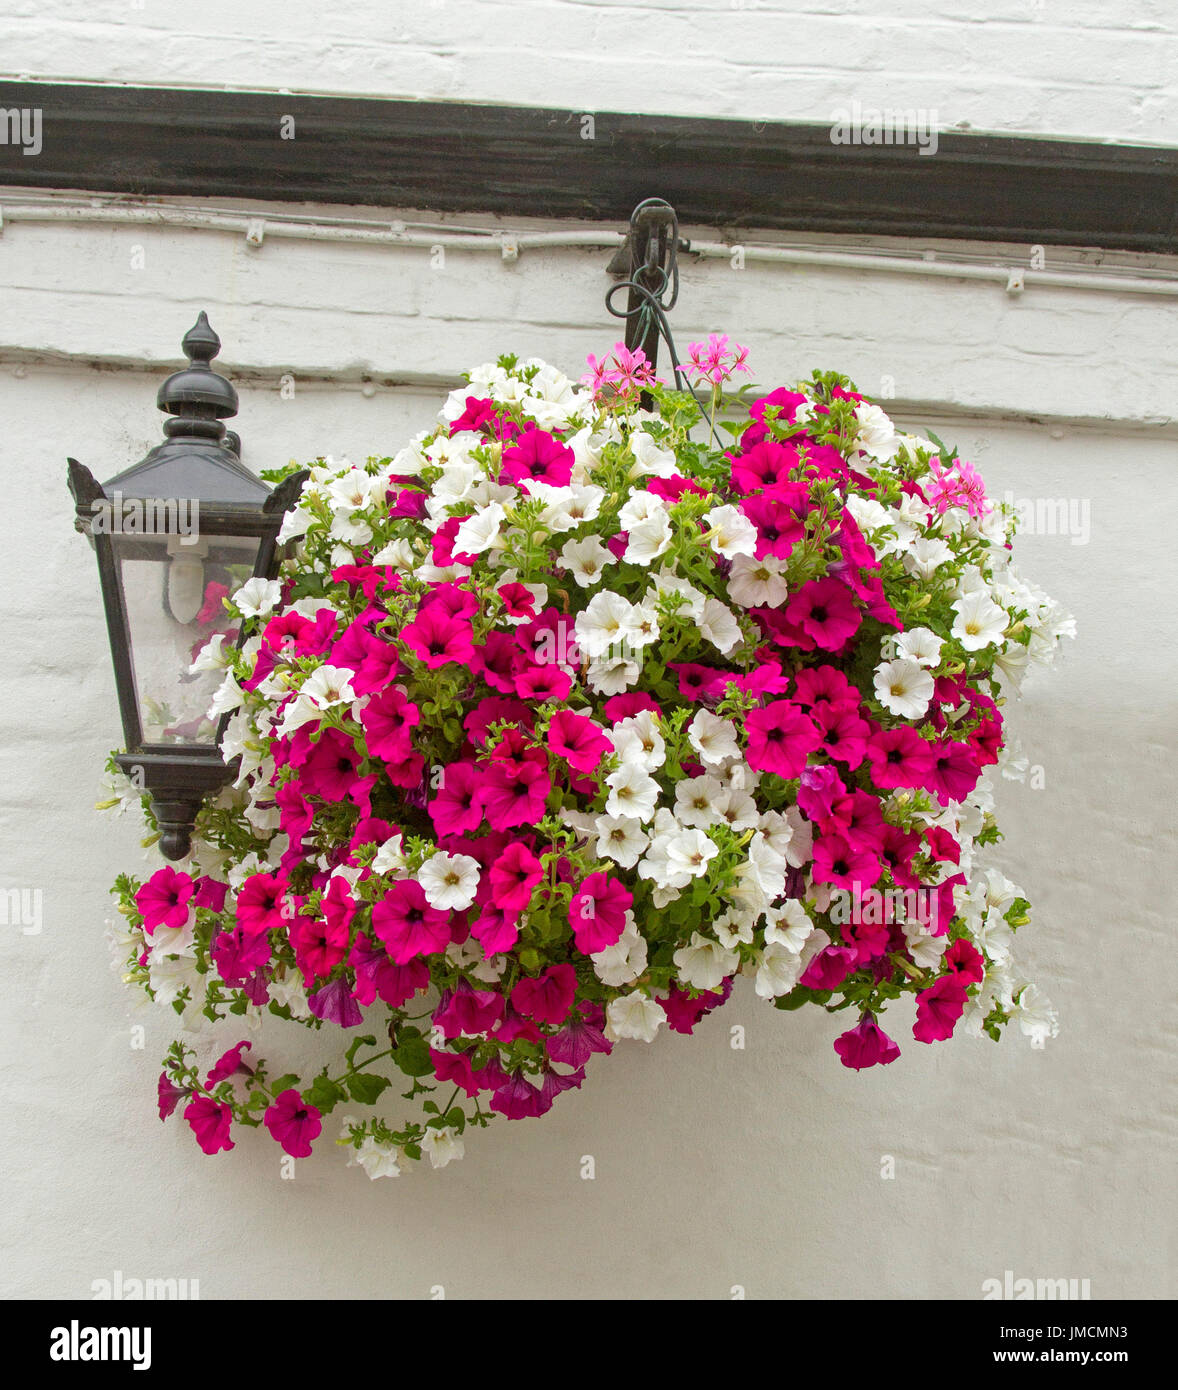 Massa di straordinaria fioritura colorata annuari, bianco e rosso vivo nelle petunie, nel cesto appeso contro il muro bianco Foto Stock